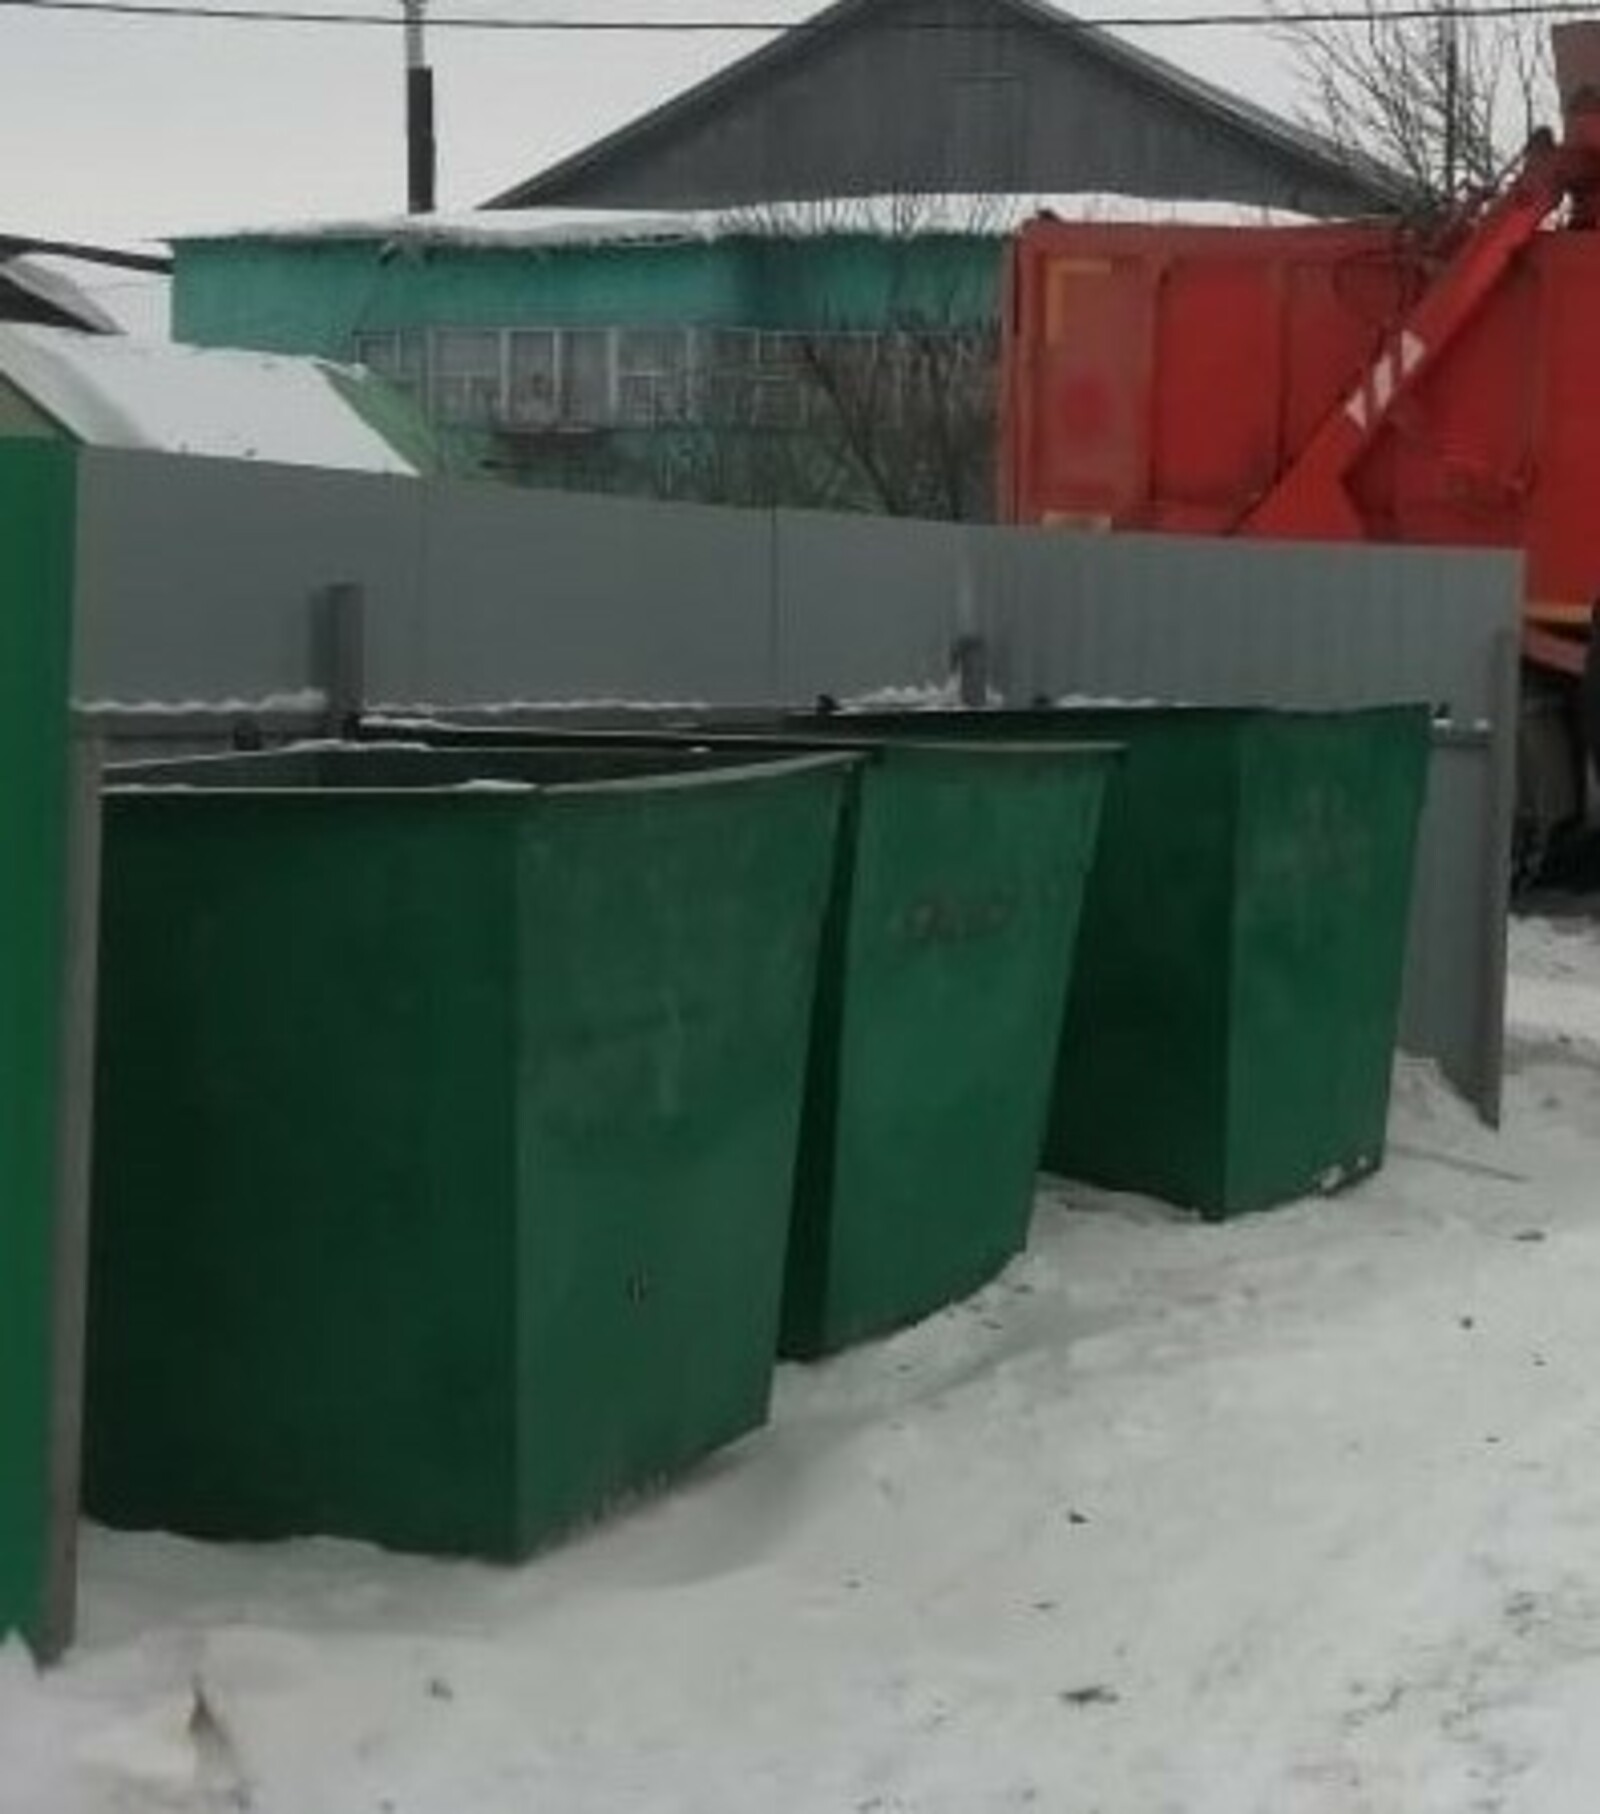 Жителей Башкирии предупредили о сбоях в вывозе мусора из-за погоды